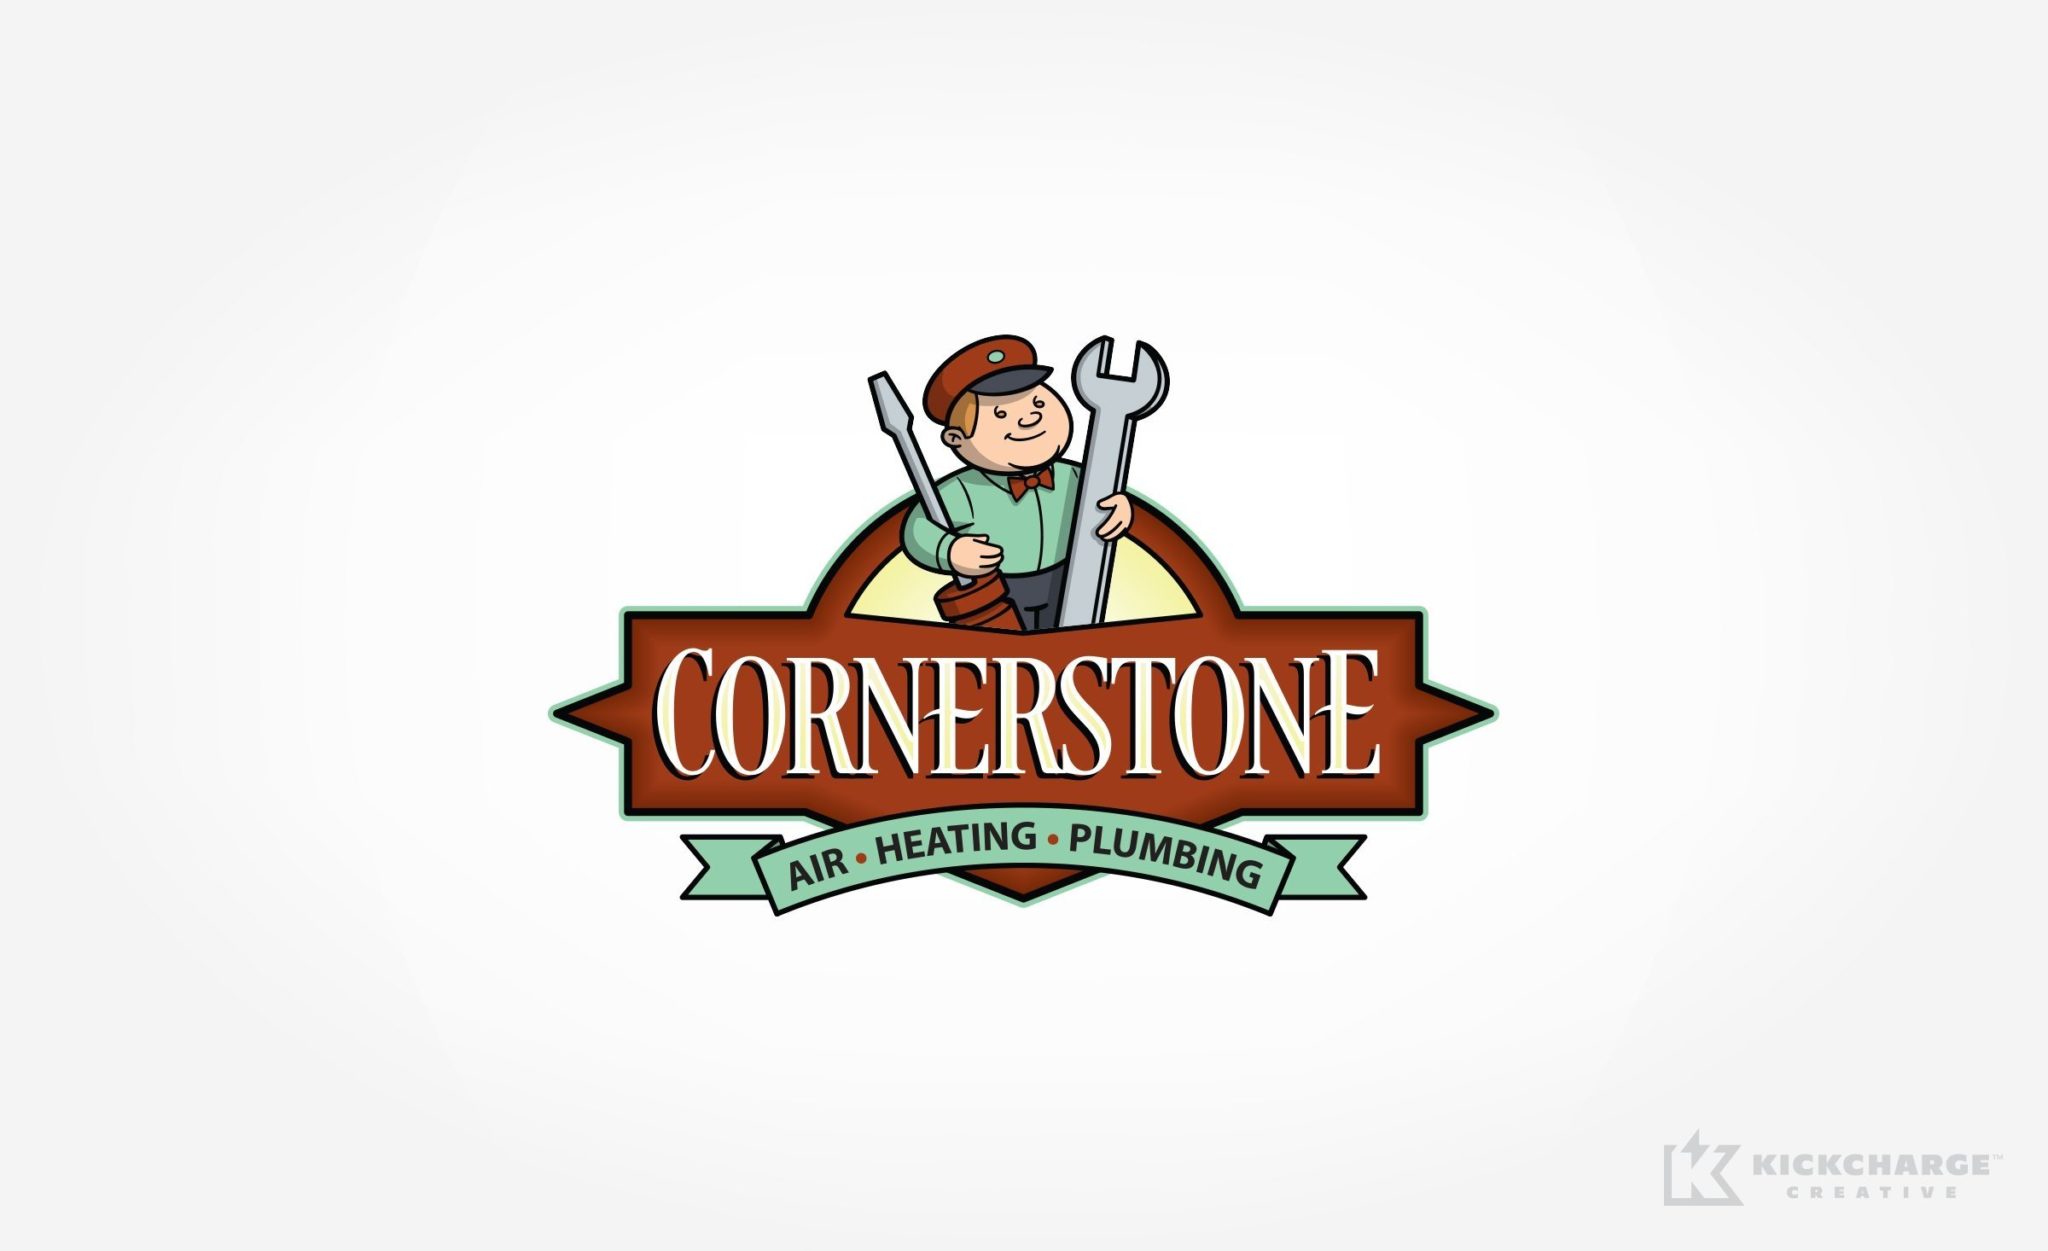 Cornerstone Air, Heating & Plumbing